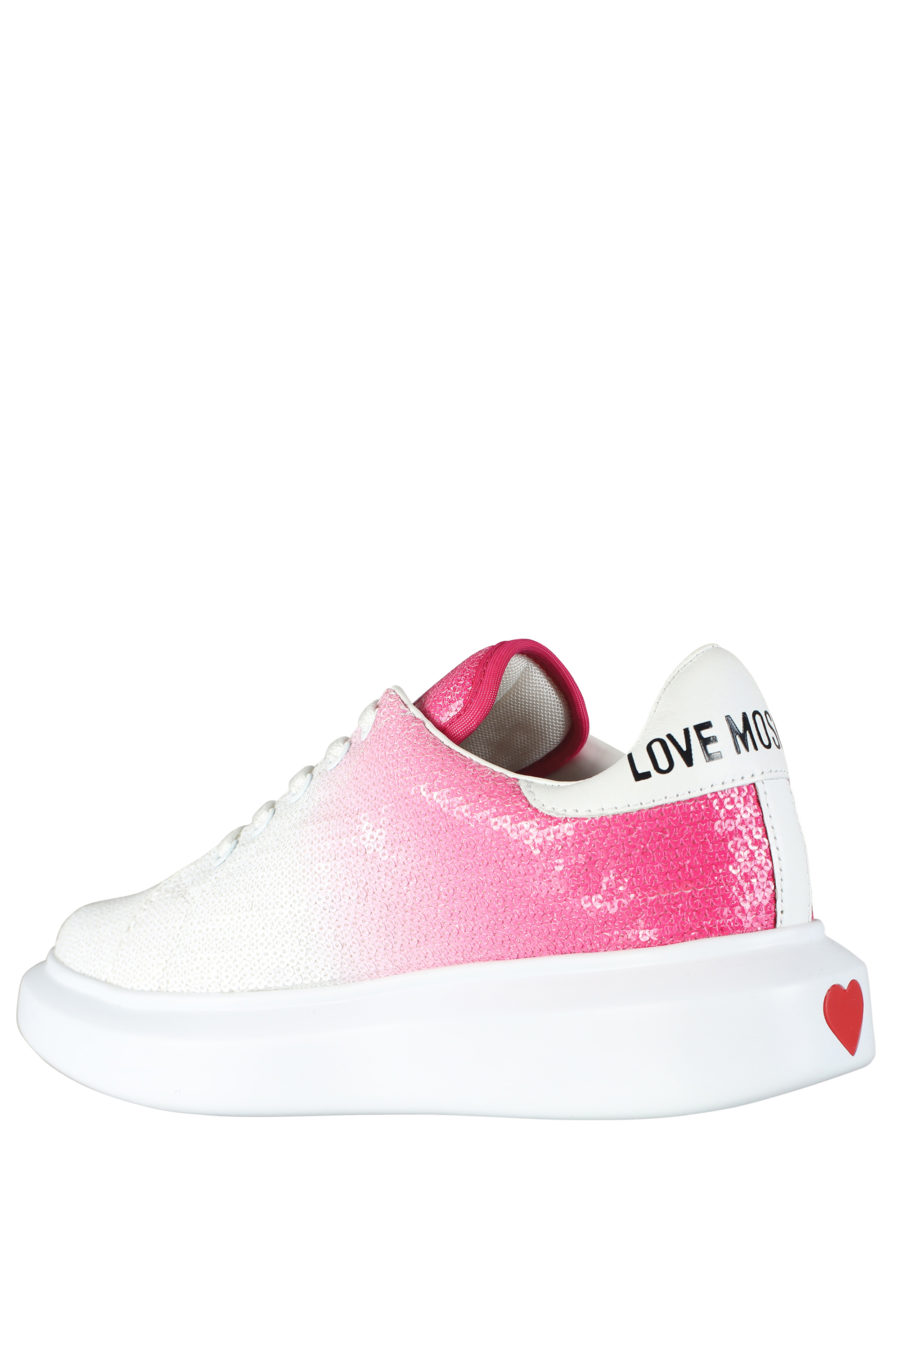 Zapatillas blancas con degrade rosa y lentejuelas - IMG 5263